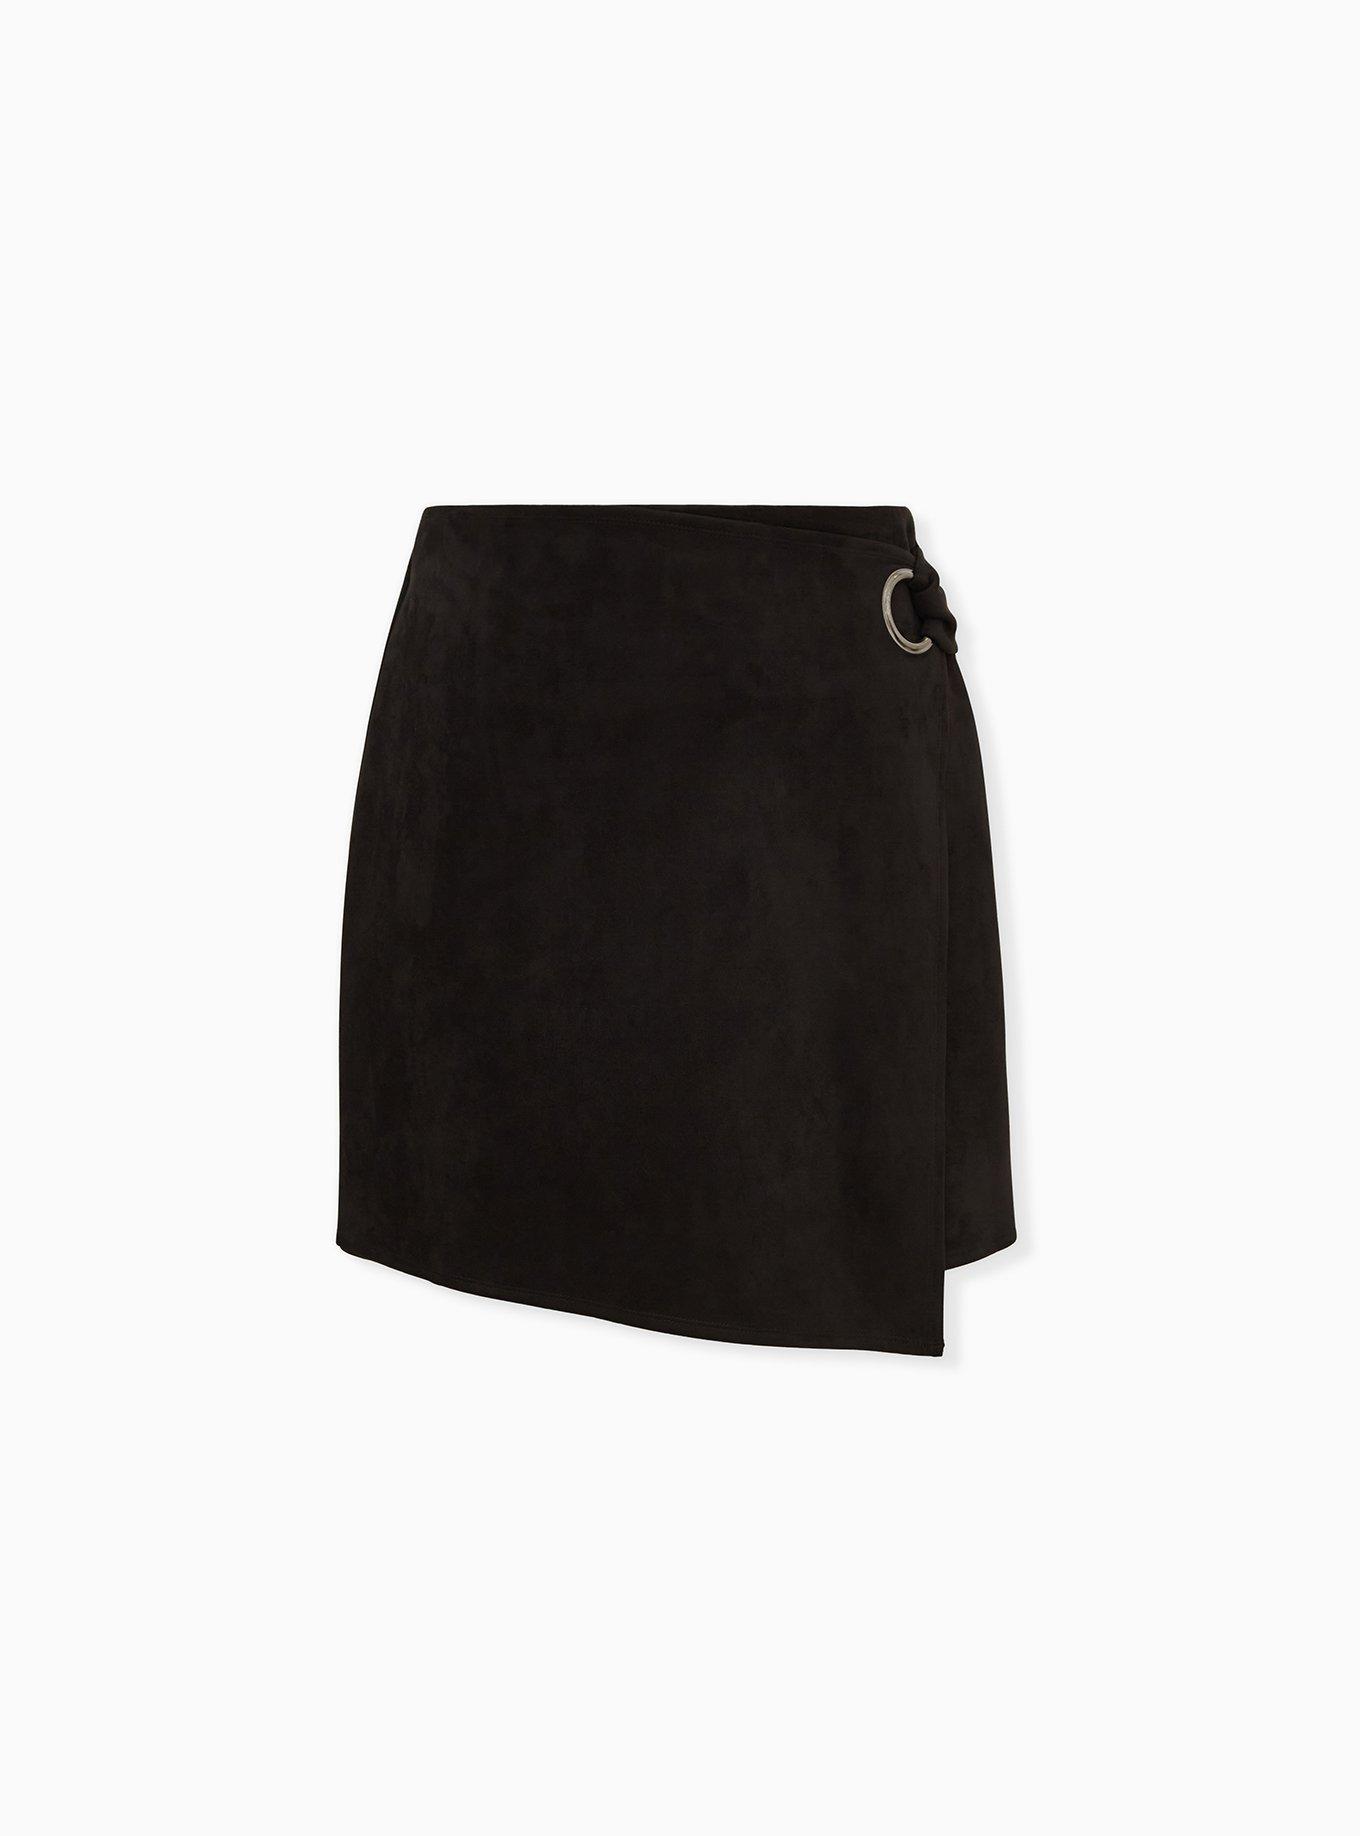 Plus Size - Black Faux Suede Grommet Wrap Skirt - Torrid